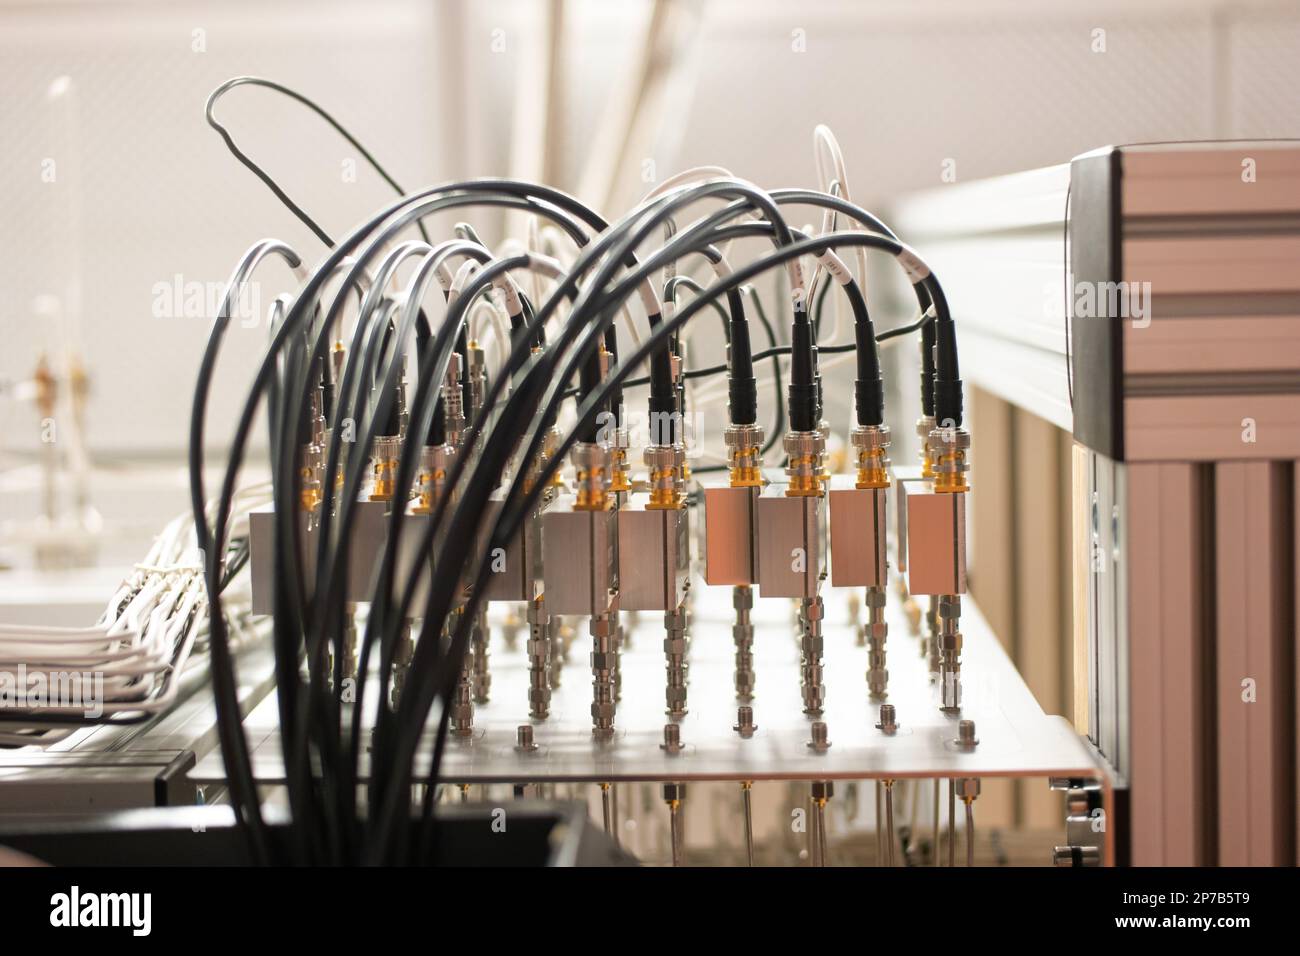 Elektronische Signalverarbeitungsgeräte in einem Wissenschaftslabor. Viele angeschlossene Kabel in Steckdosen. Organisiert, ordentlich, nicht chaotisch. Nahaufnahme, keine Leute. Stockfoto